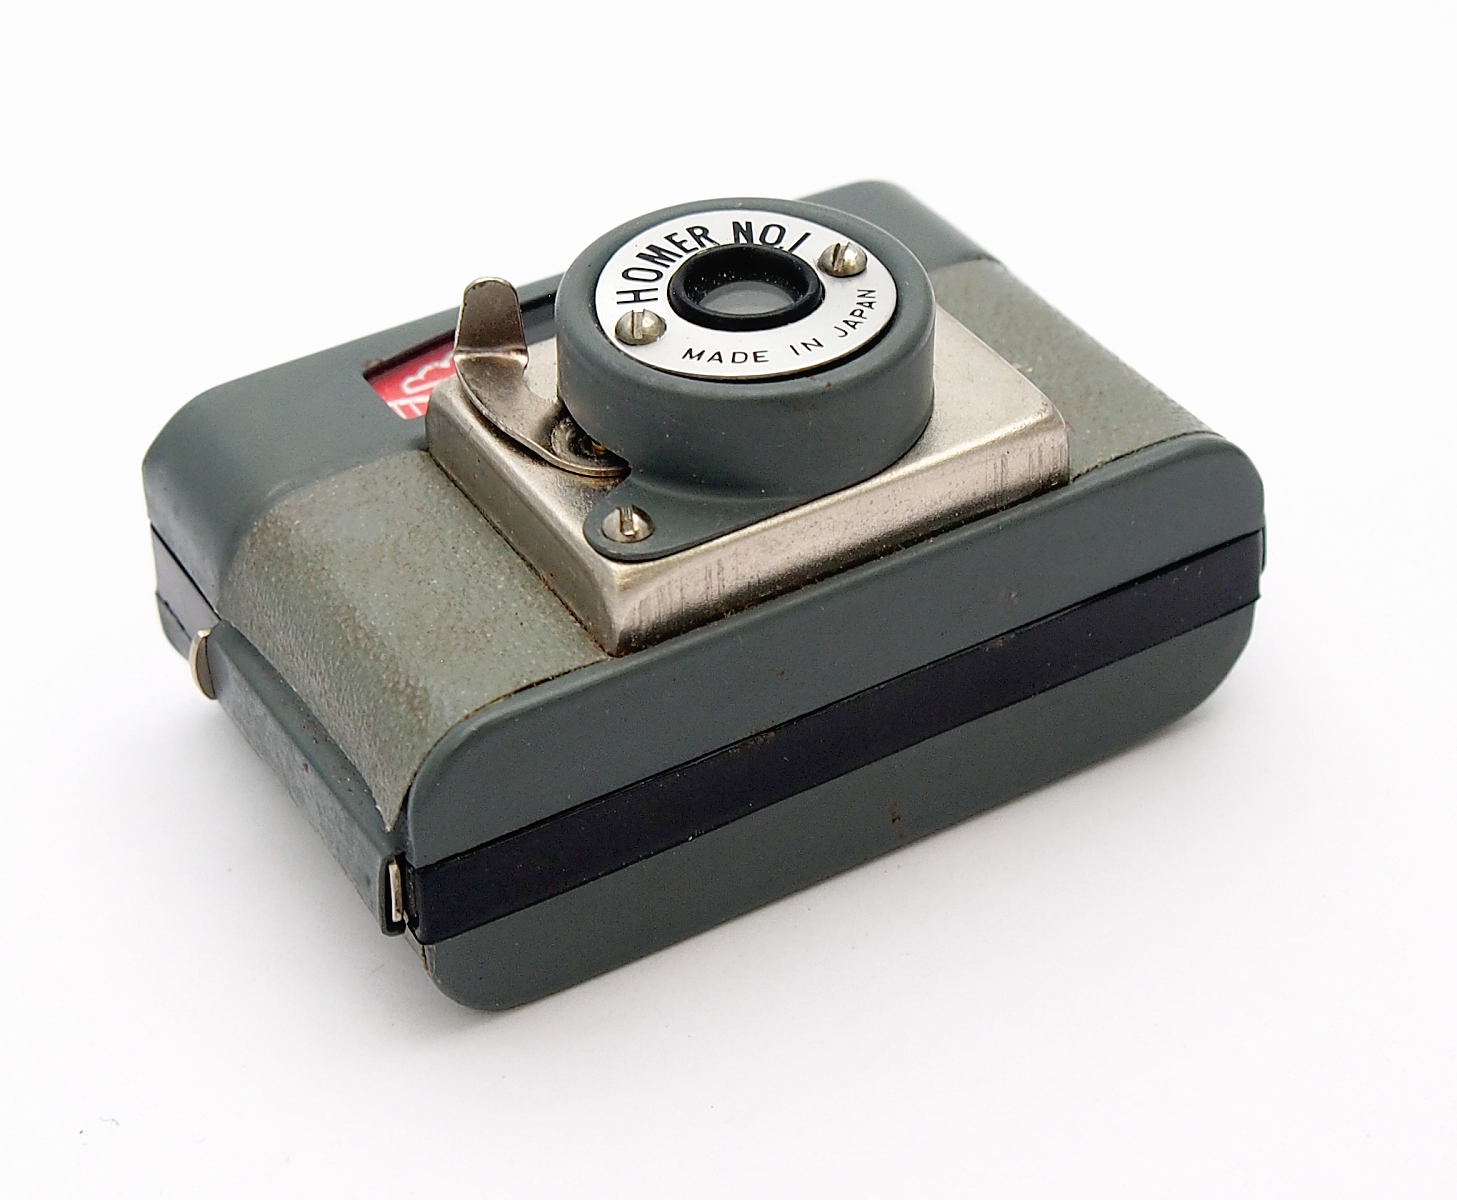 Homer No 1 16mm Subminiature Camera #9449